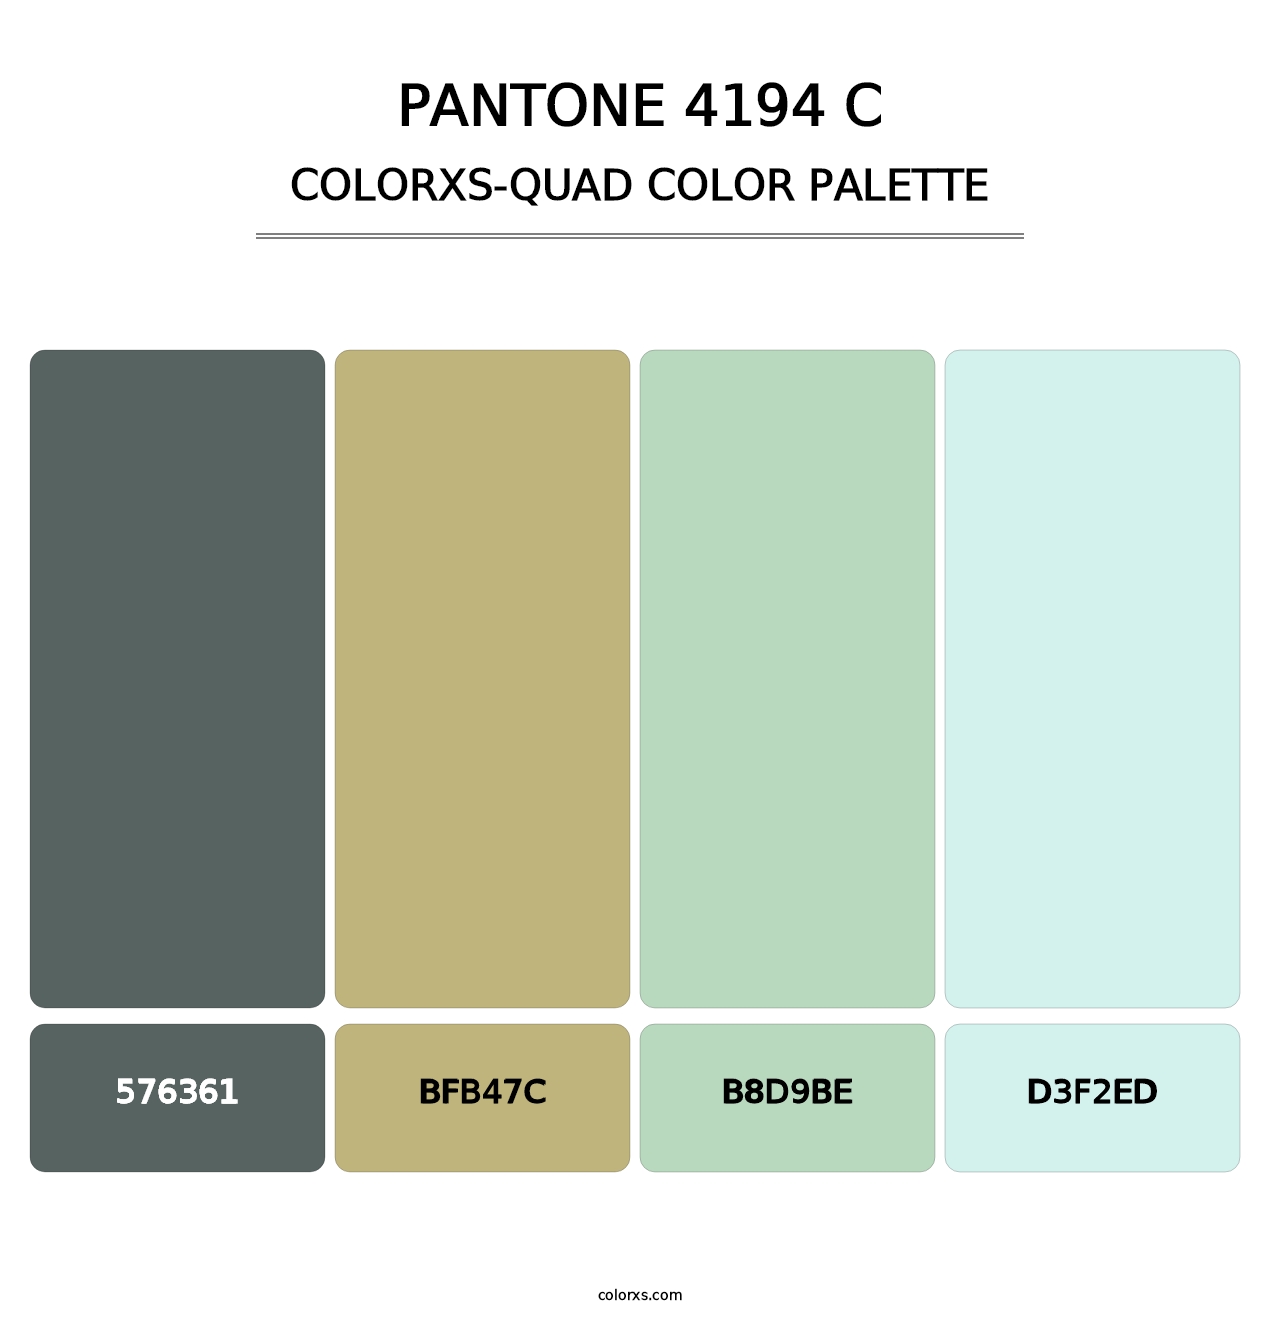 PANTONE 4194 C - Colorxs Quad Palette